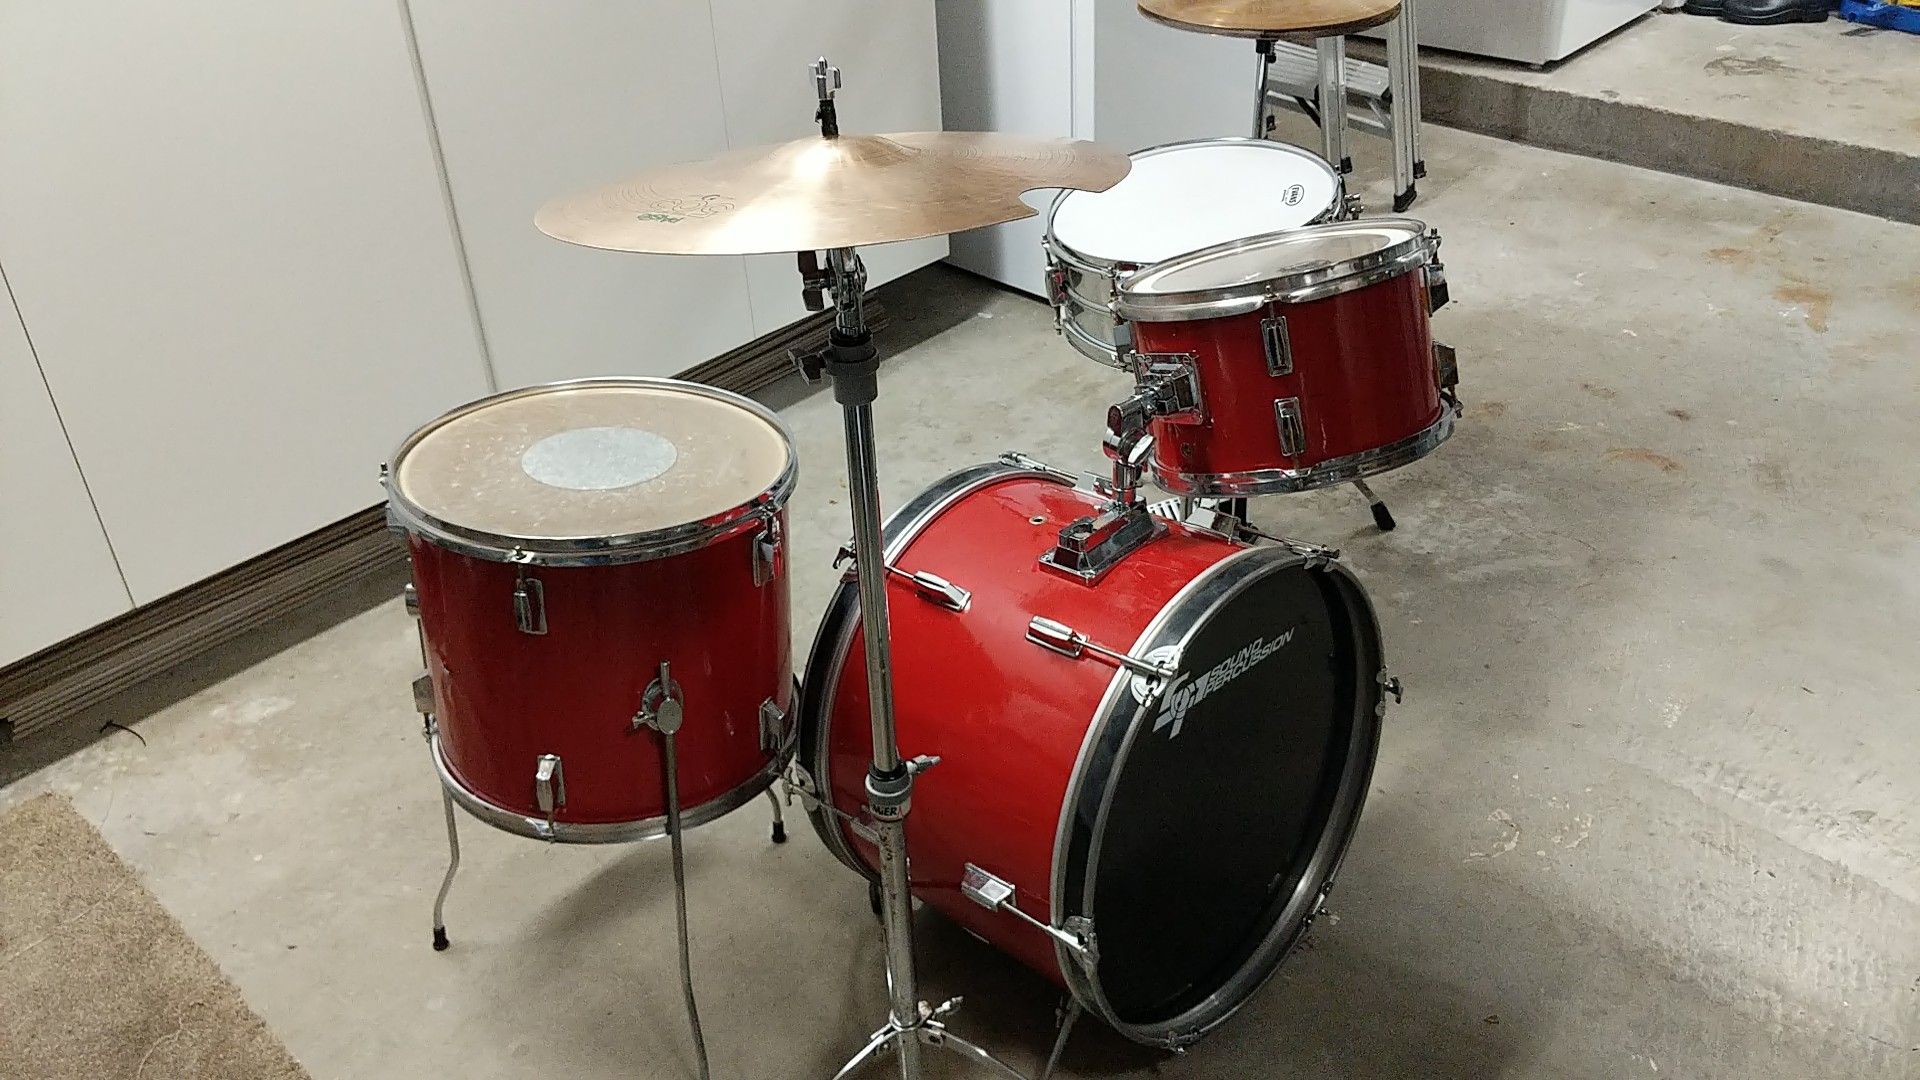 Sound percussion drum set